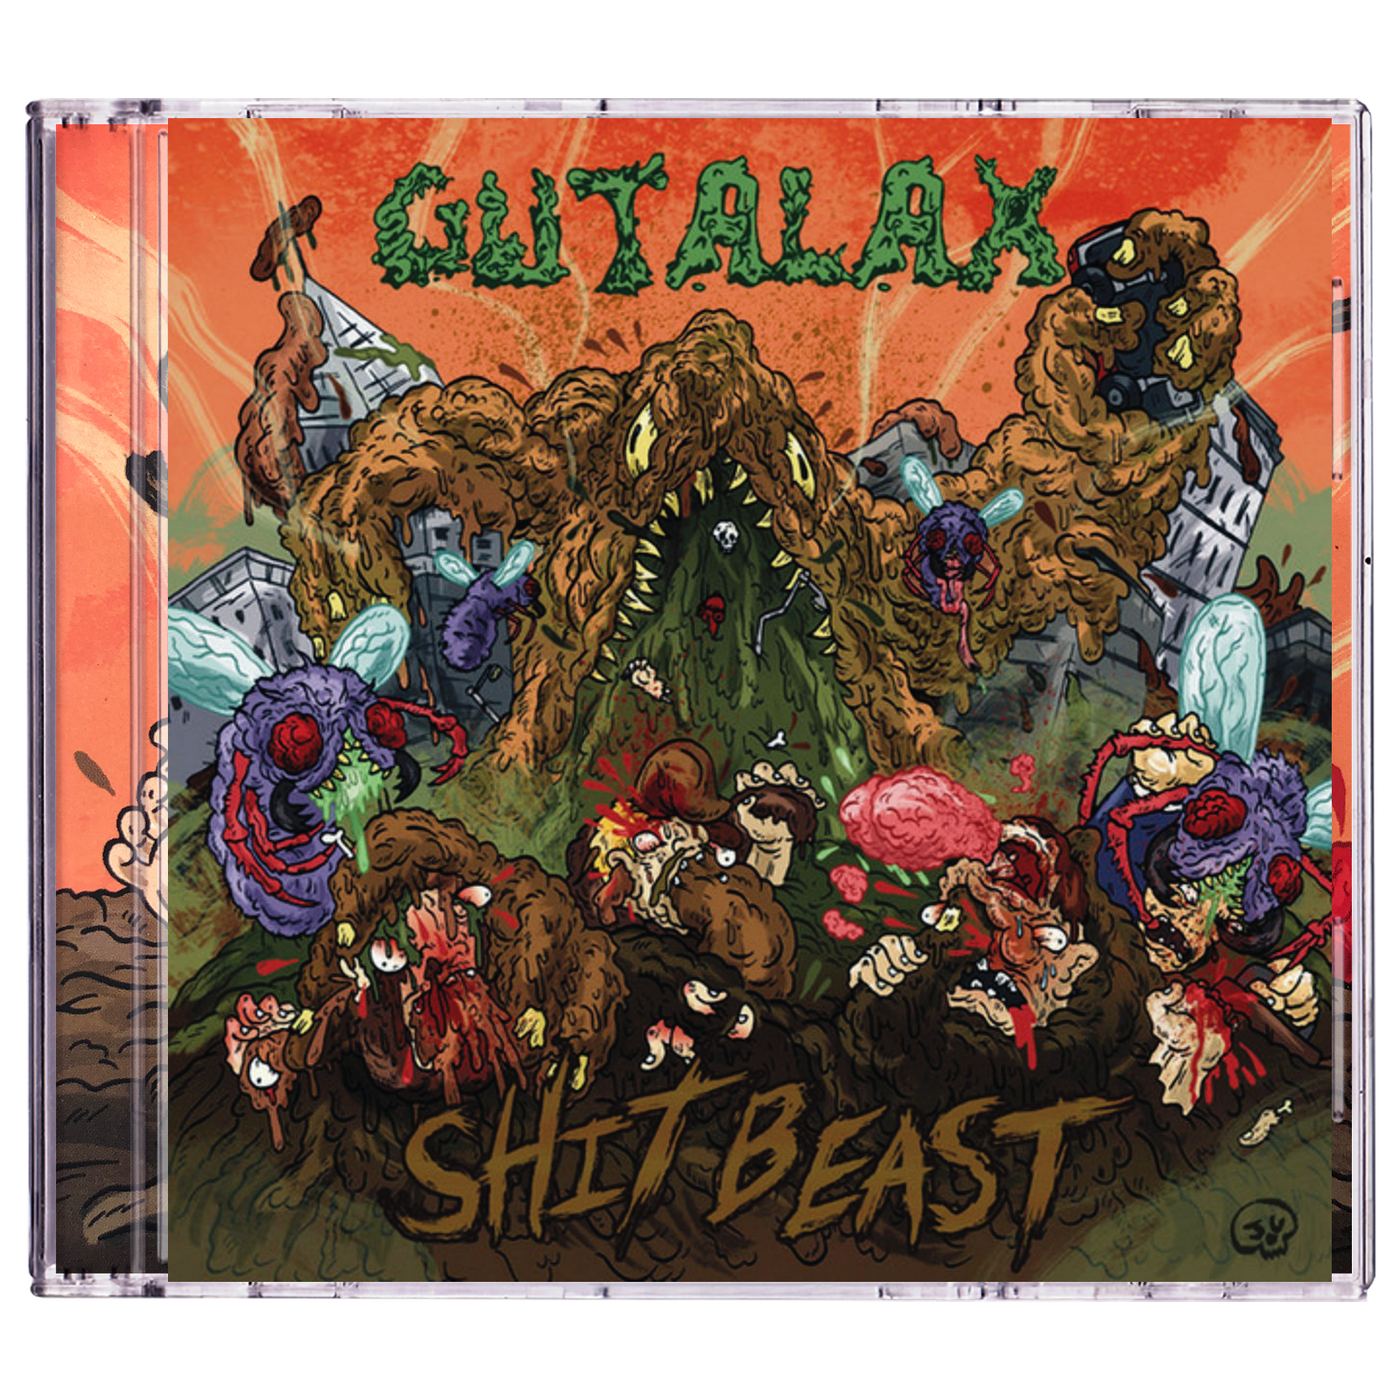 Gutalax 'Shit Beast' CD